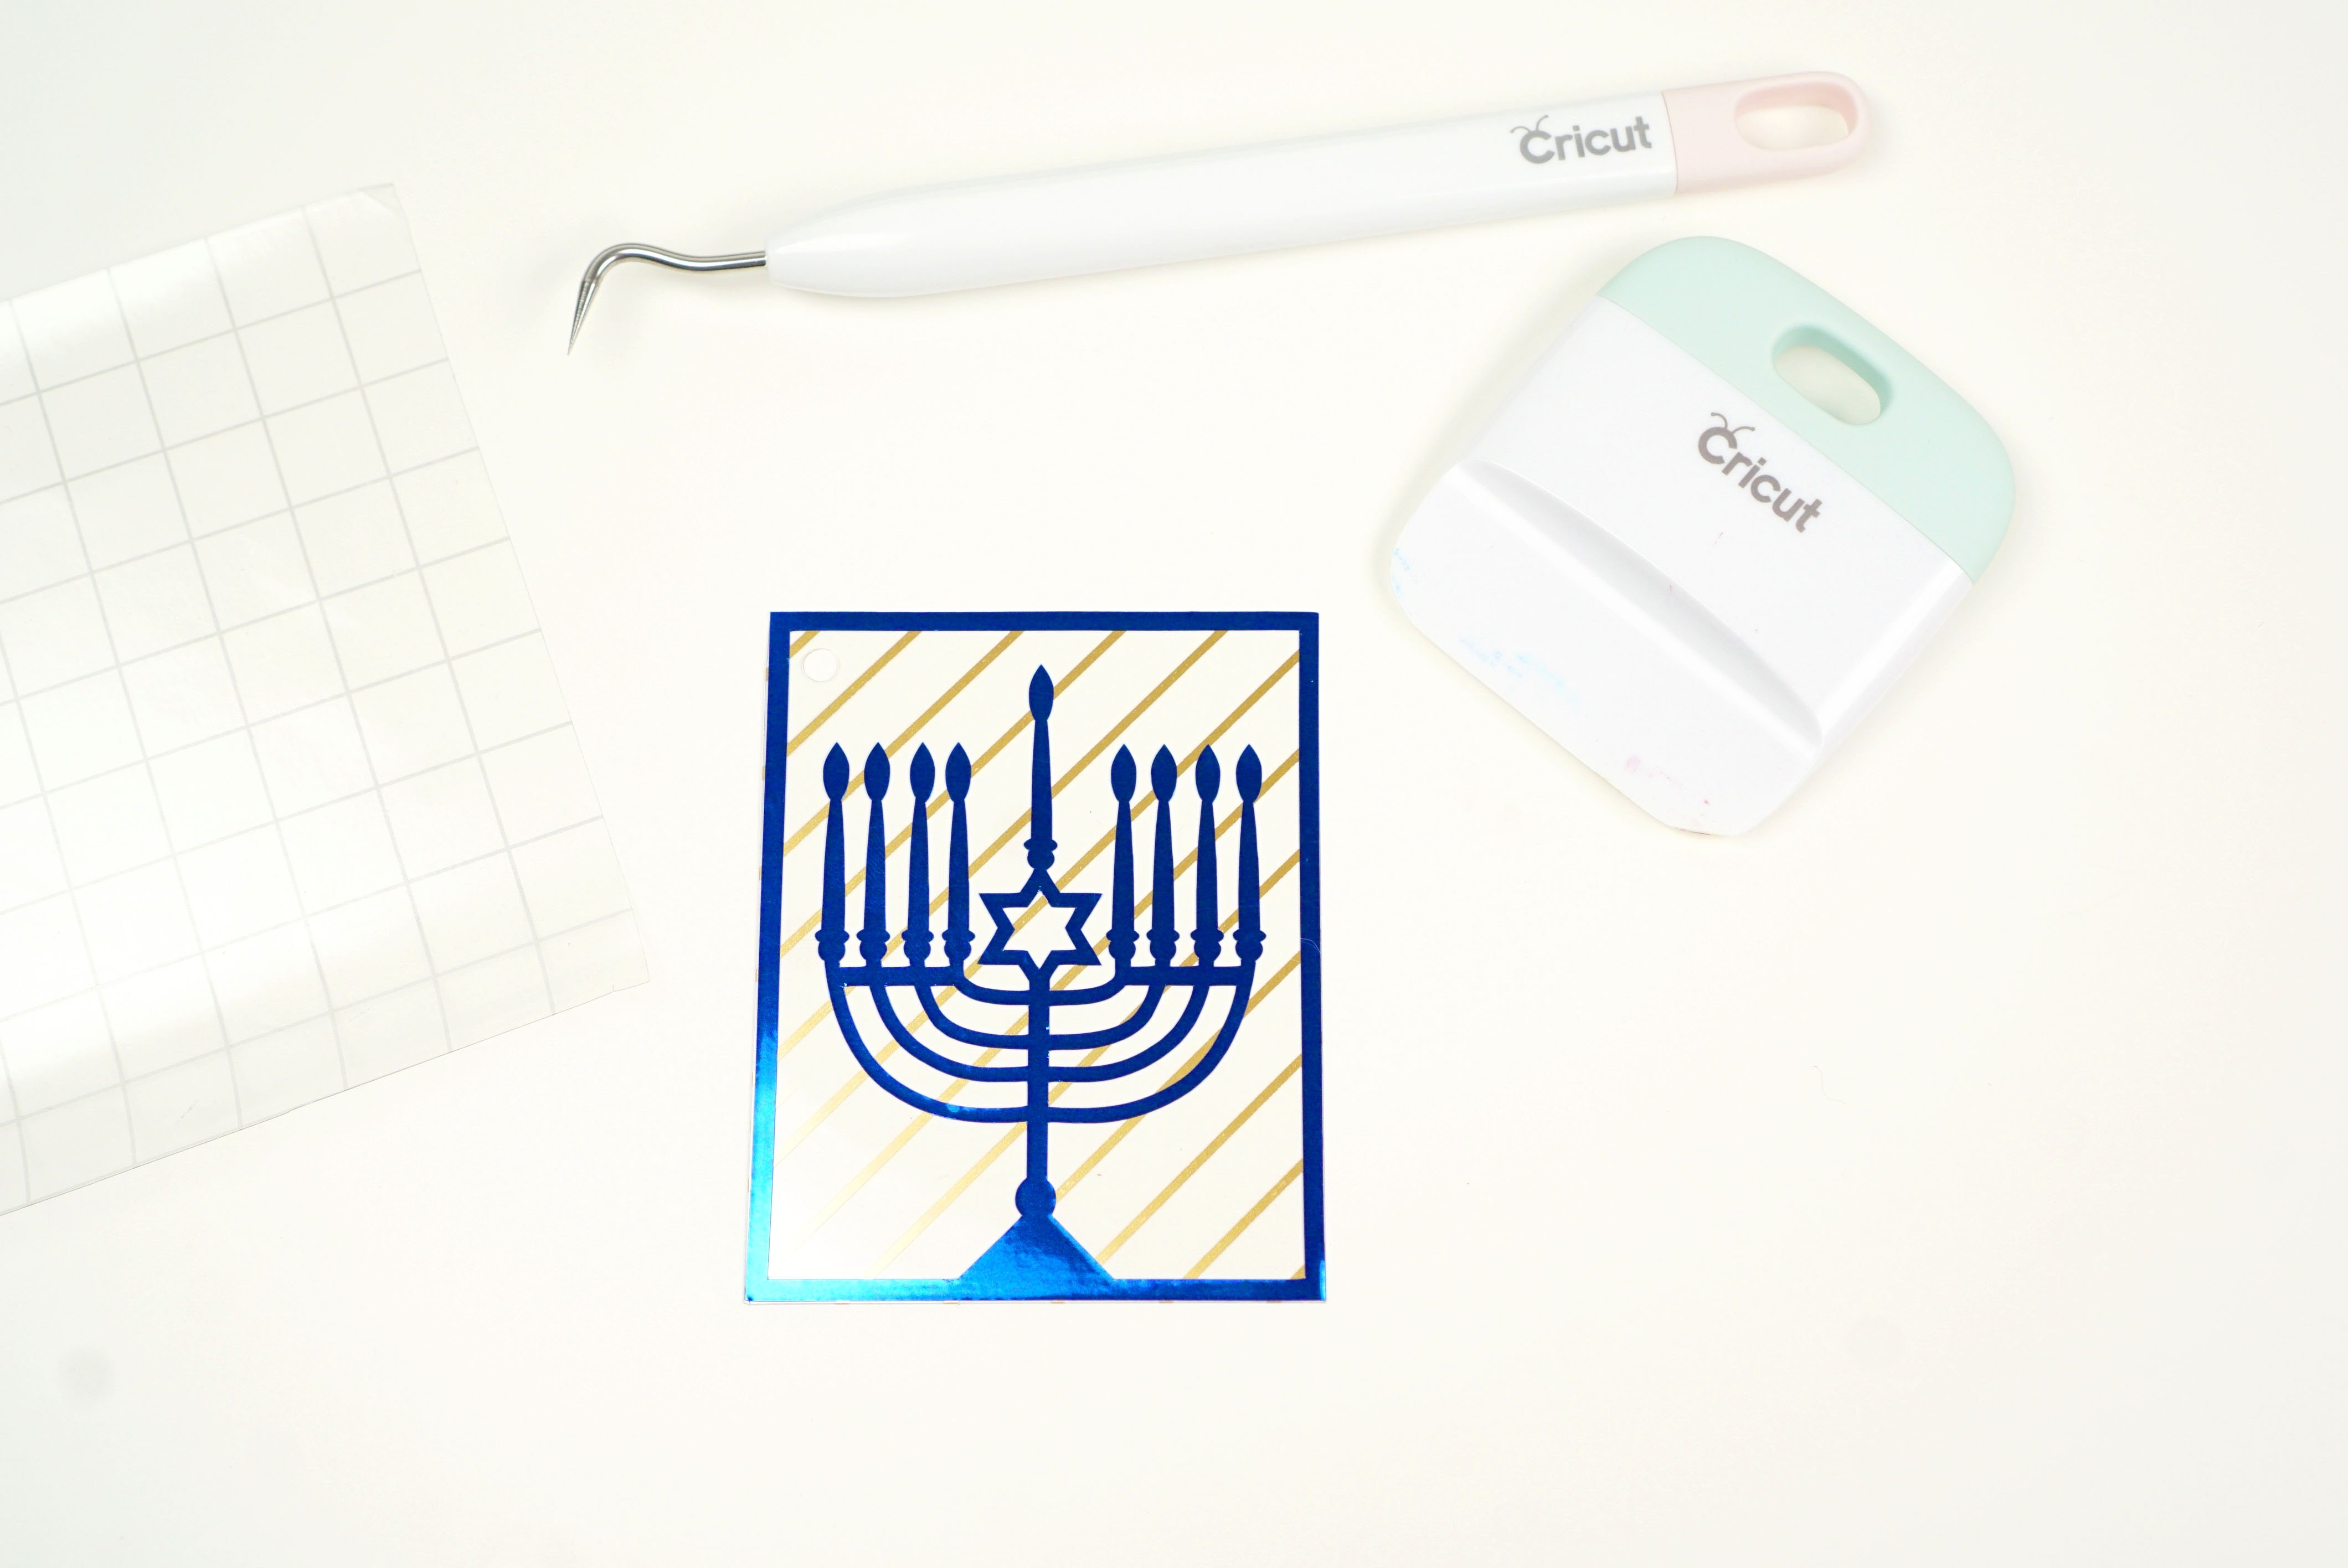 hanukkah gift tag and cricut tools